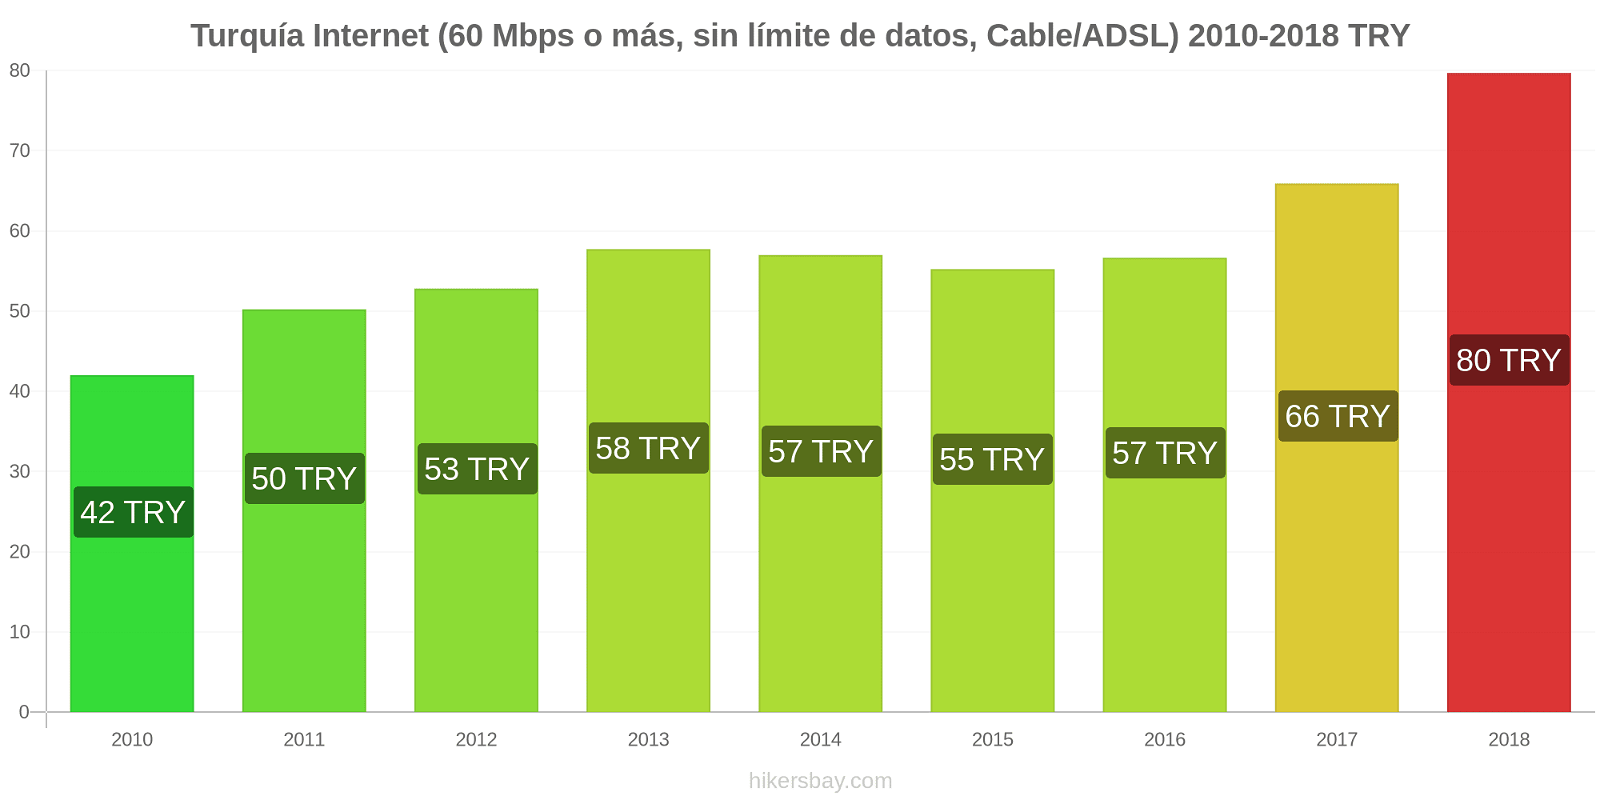 Turquía cambios de precios Internet (60 Mbps o más, datos ilimitados, cable/ADSL) hikersbay.com